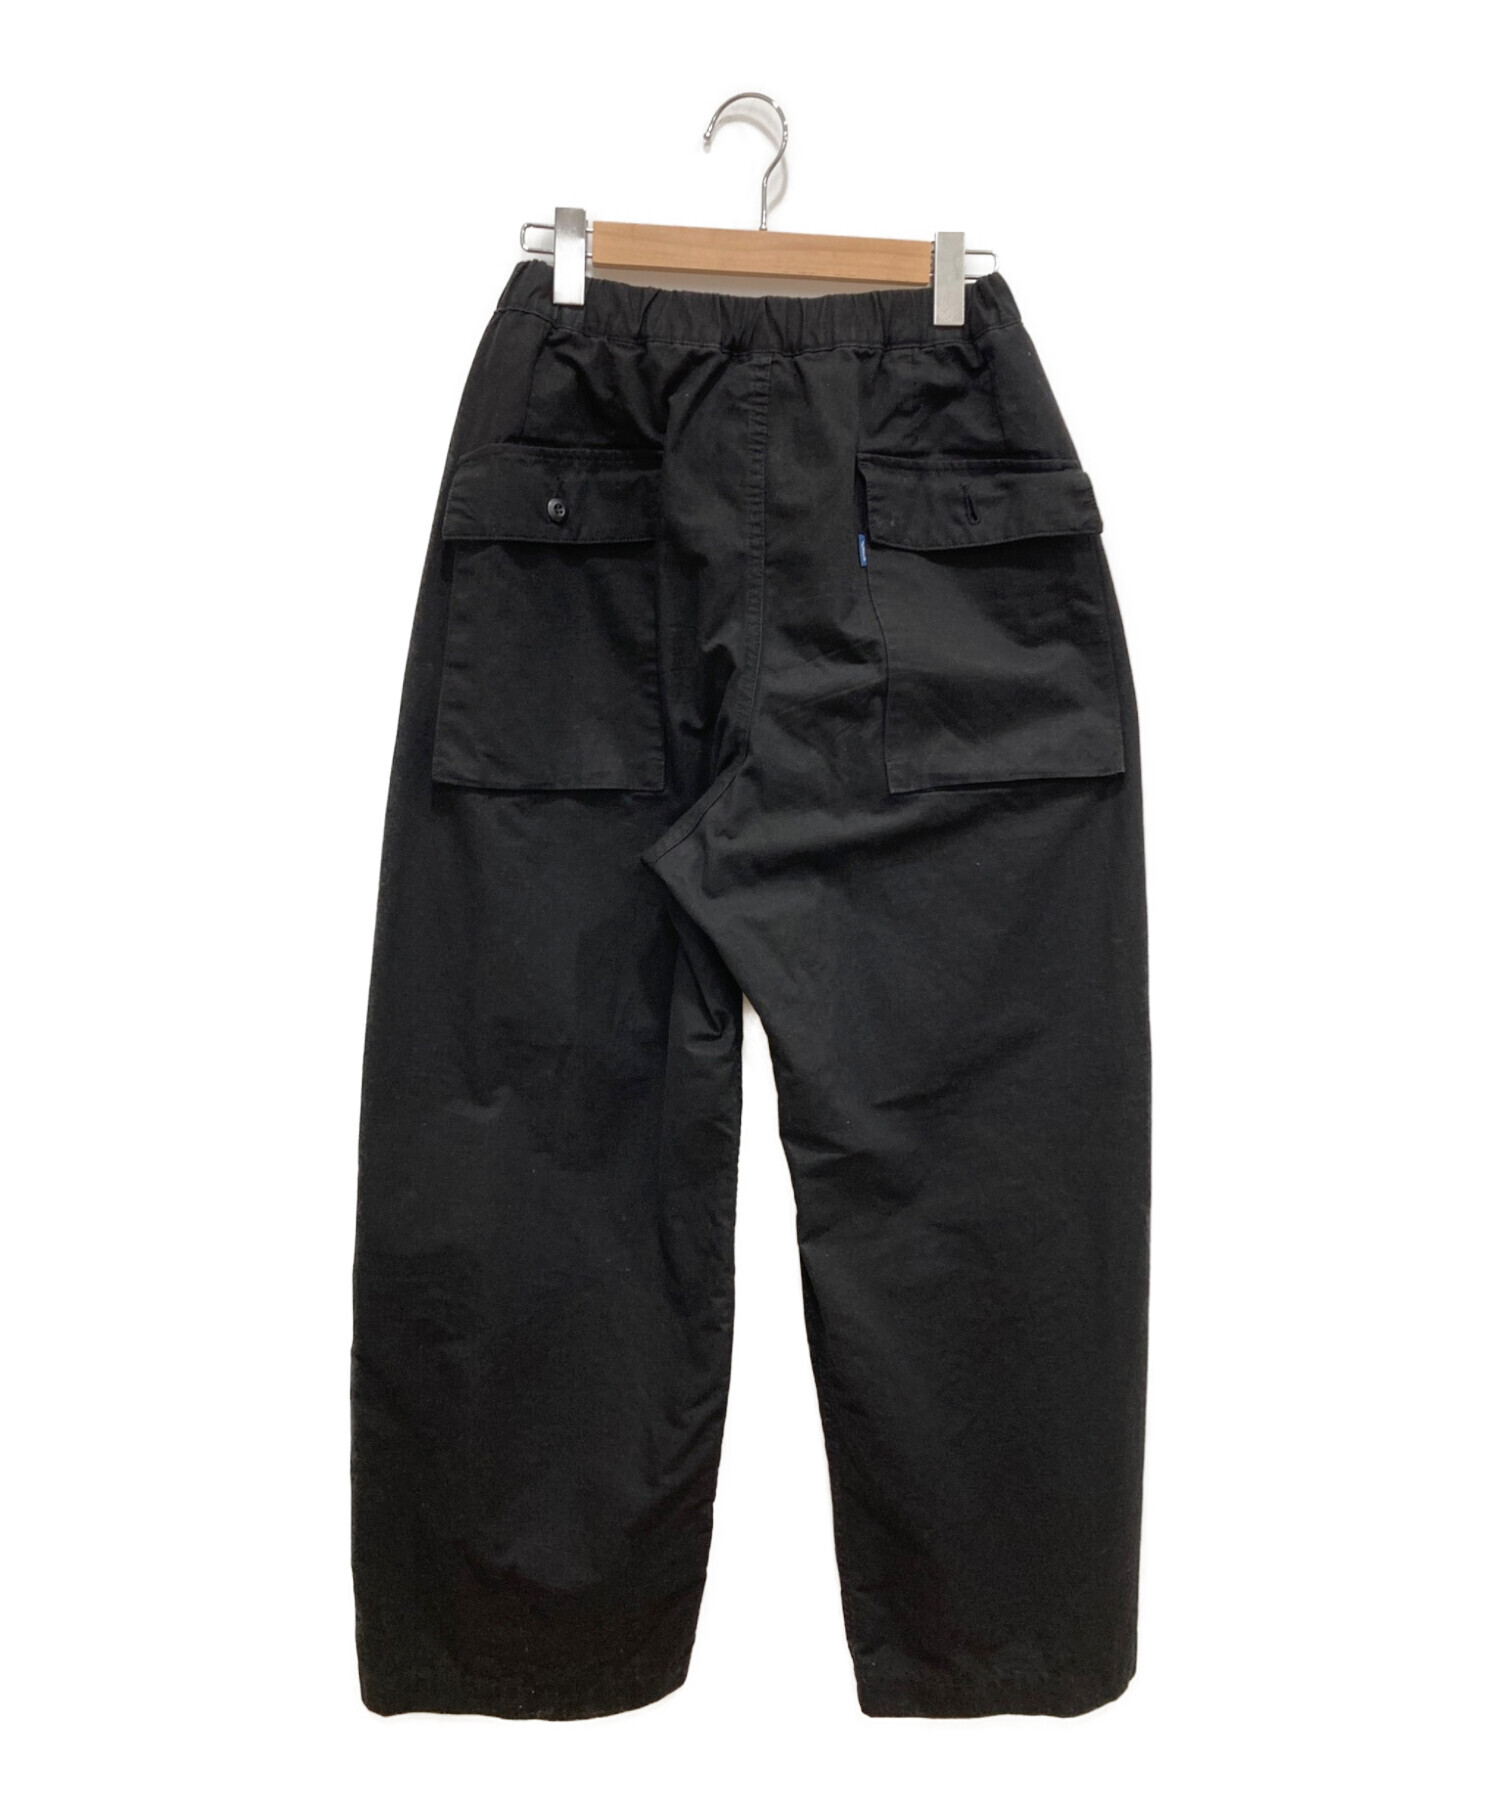 Tap Water (タップ ウォーター) Cotton Ripstop Military Trousers ブラック サイズ: 91cm (W36)